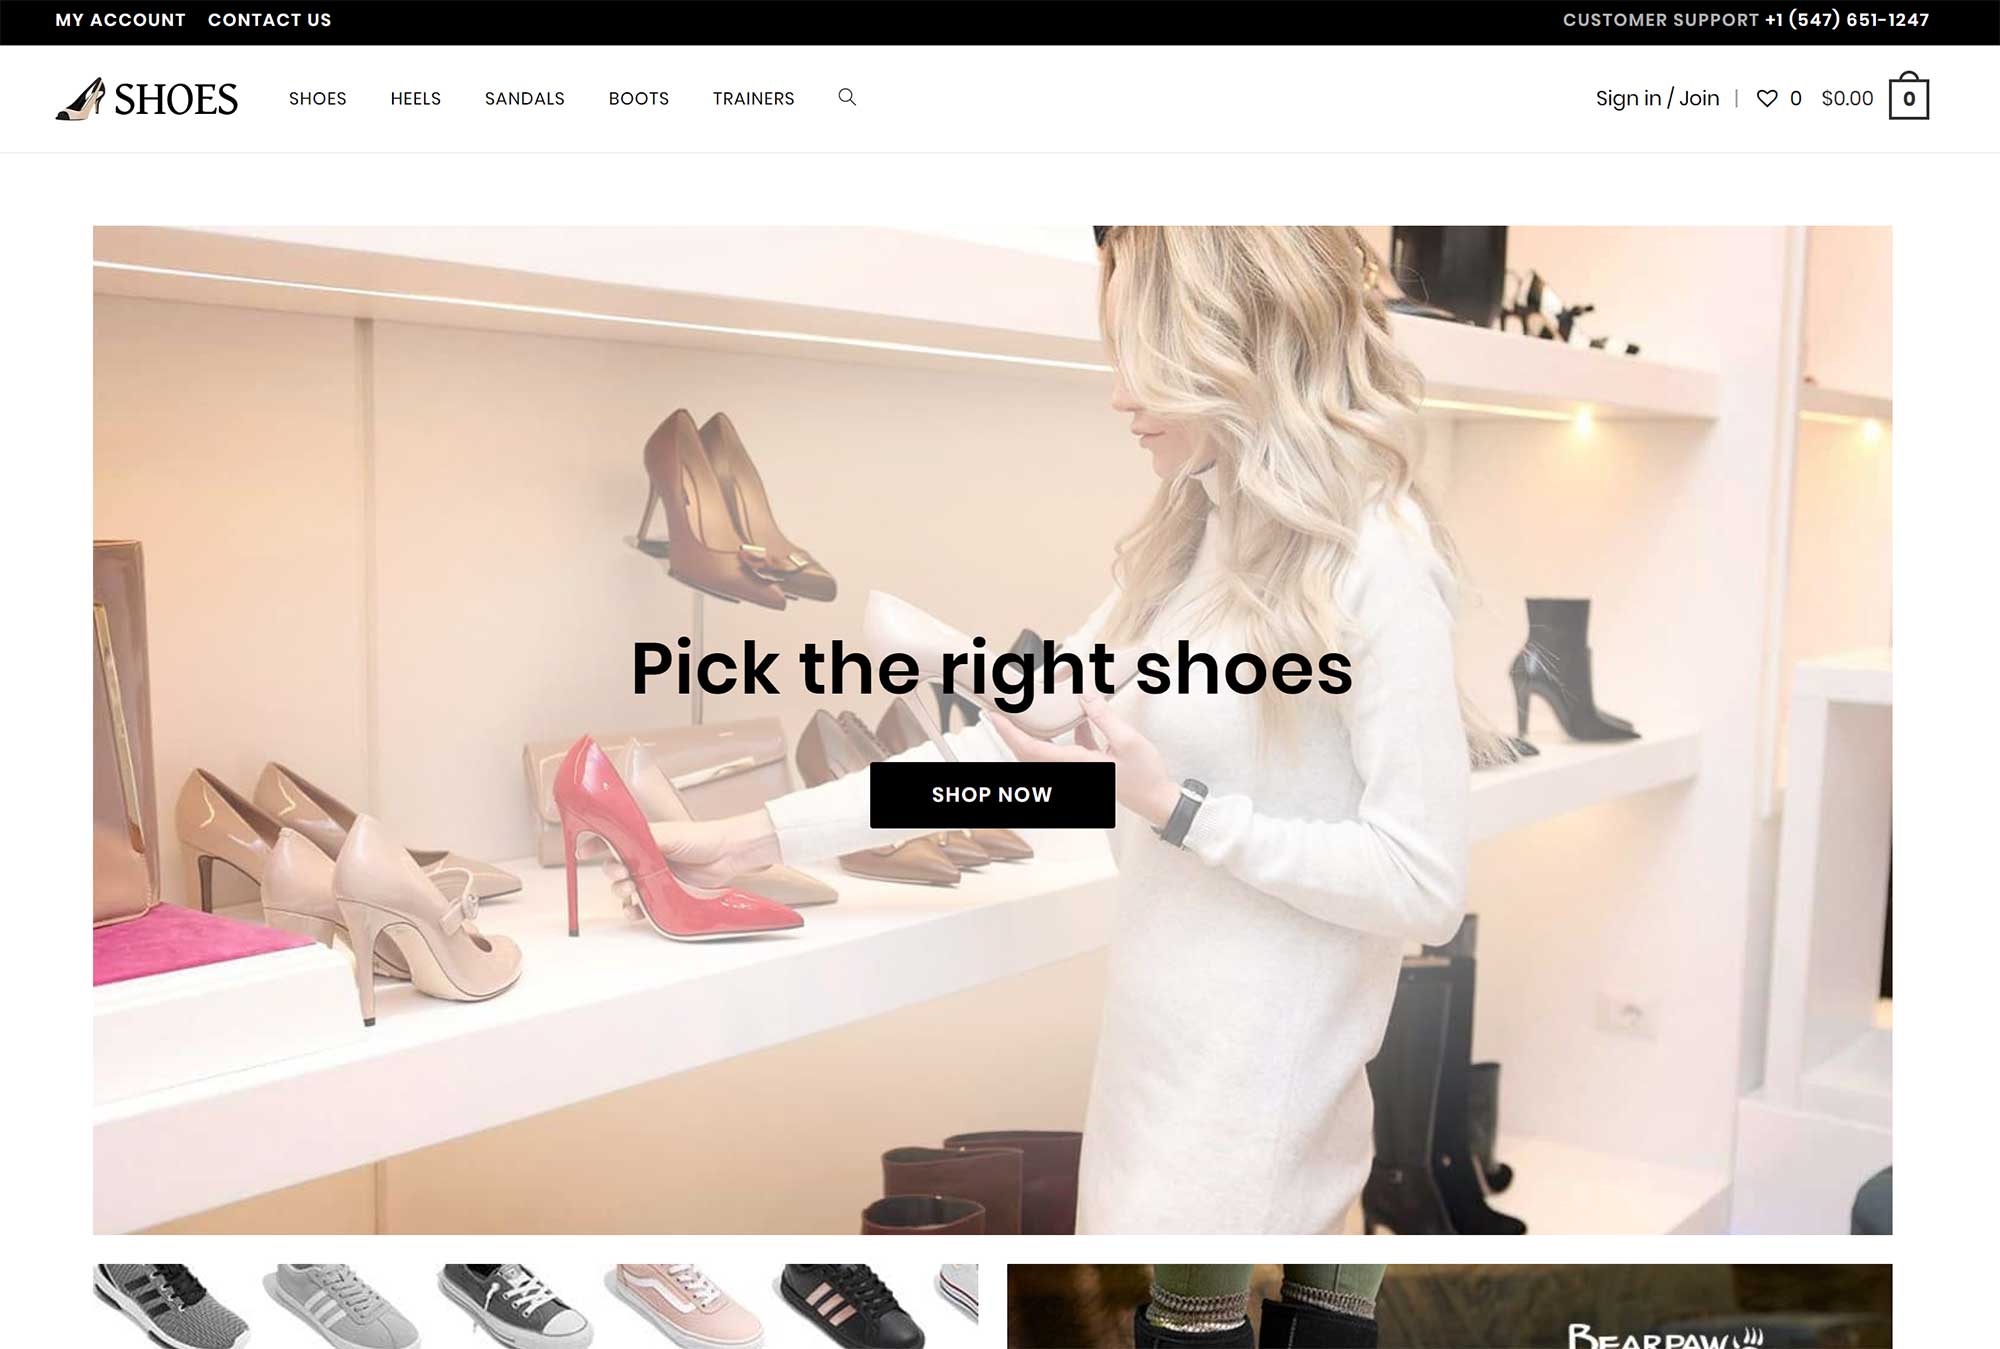 Shoes Website Design in OceanWP